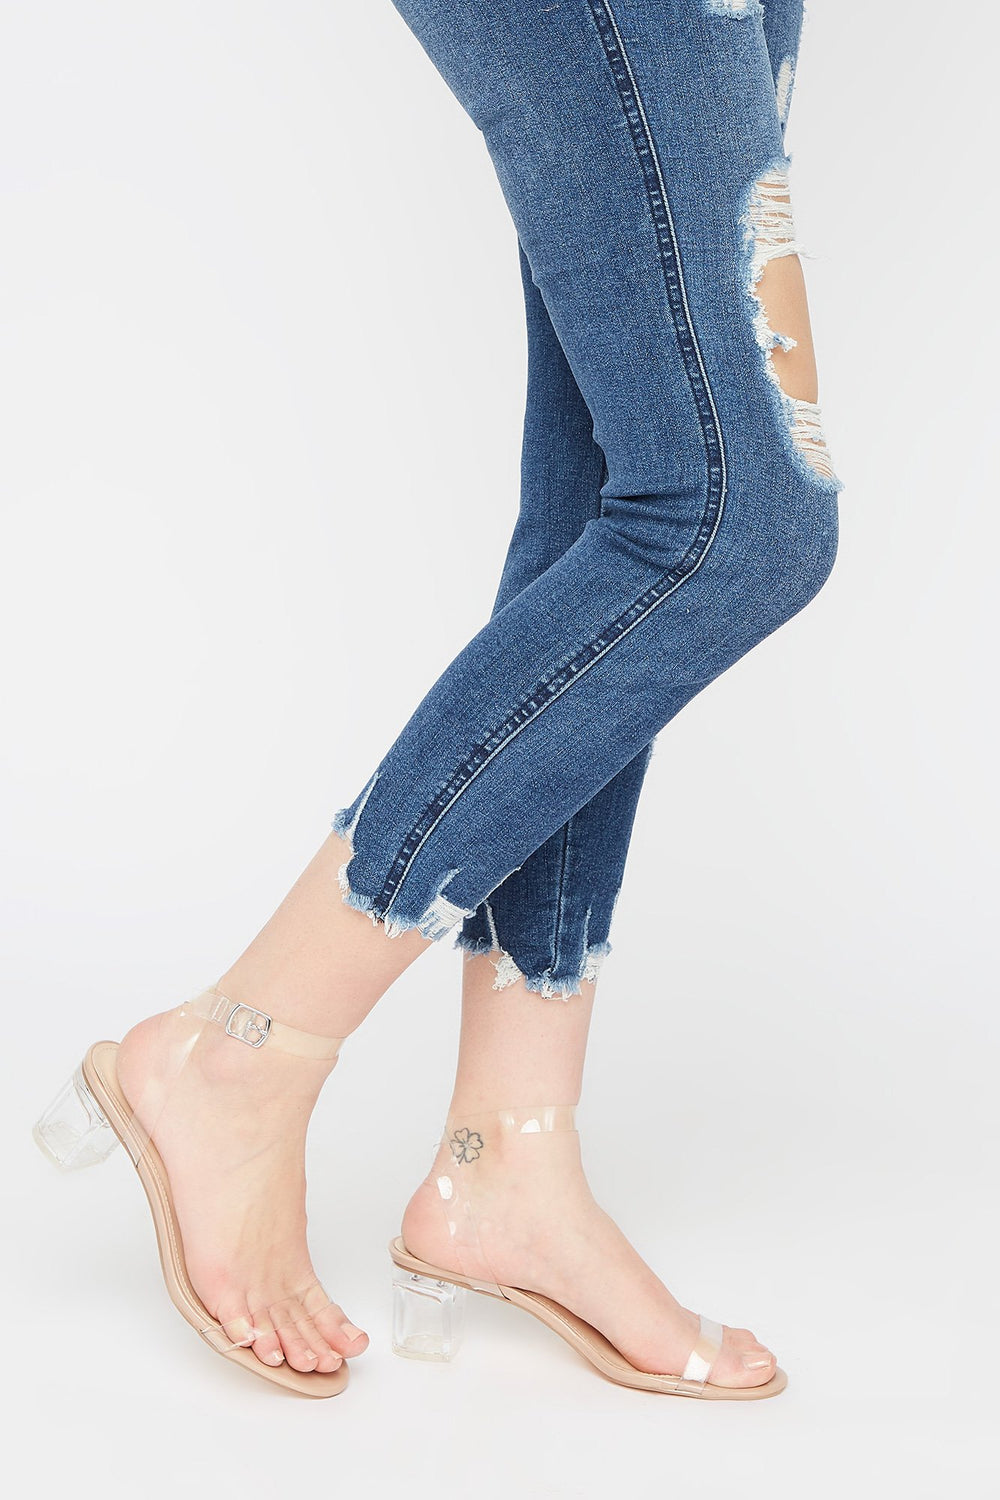 charlotte russe blue heels